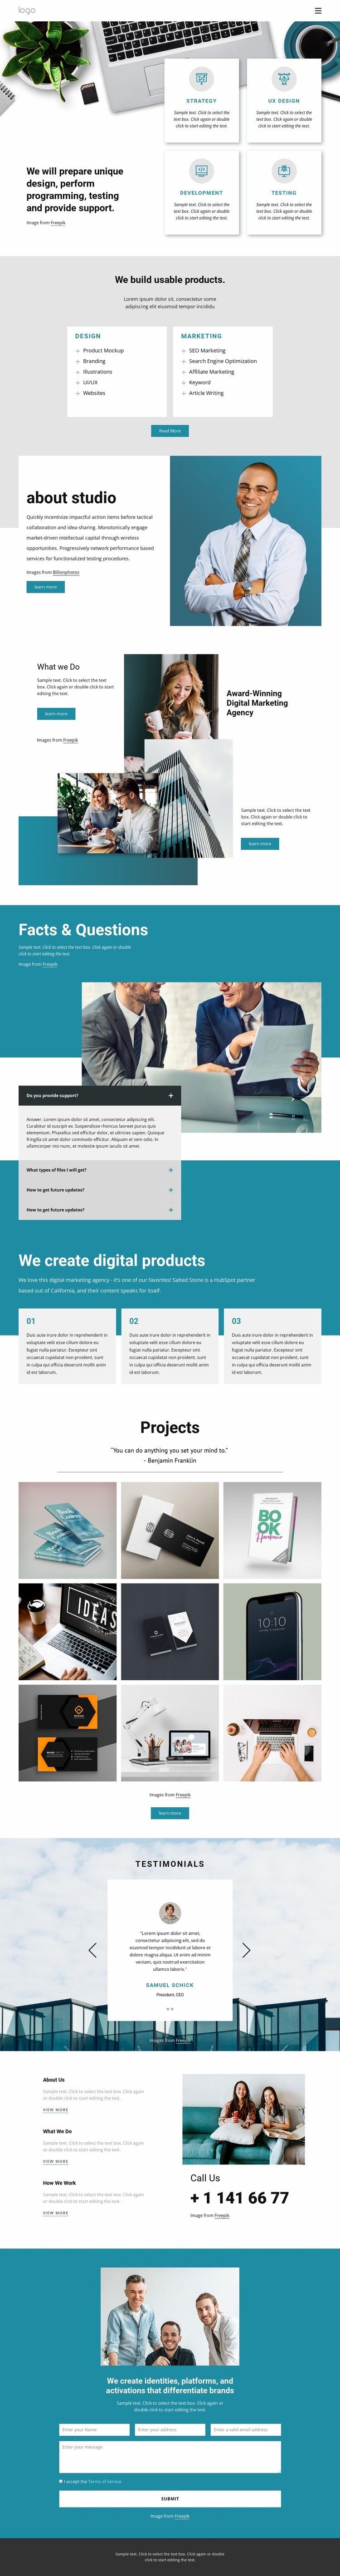 A multidisciplinary design studio Webflow Template Alternative